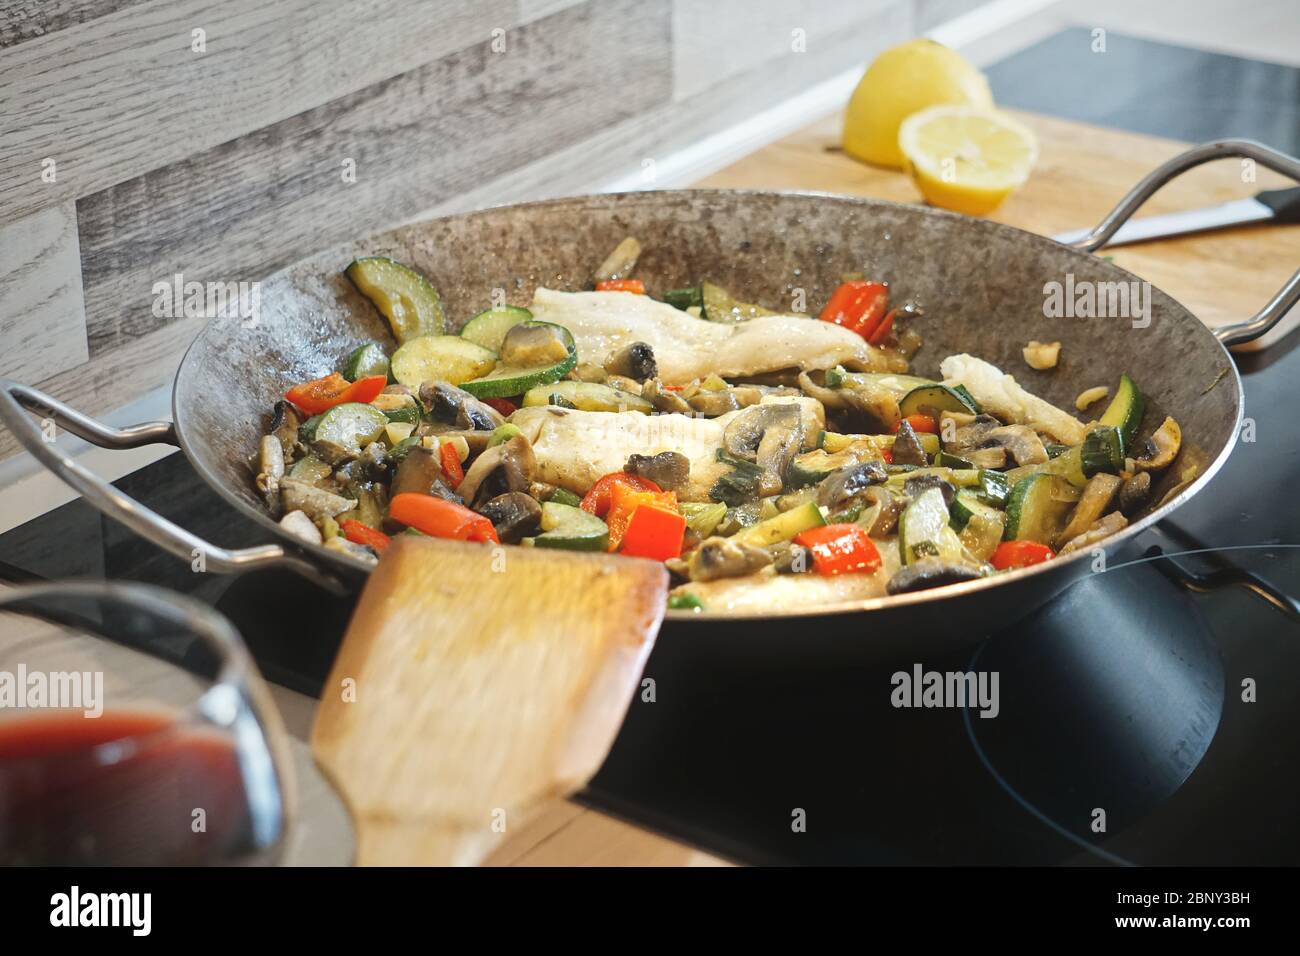 Fischgericht in Pfanne mit gebratenem Zander, Zucchini, Pfeffer, Pilzen Stockfoto